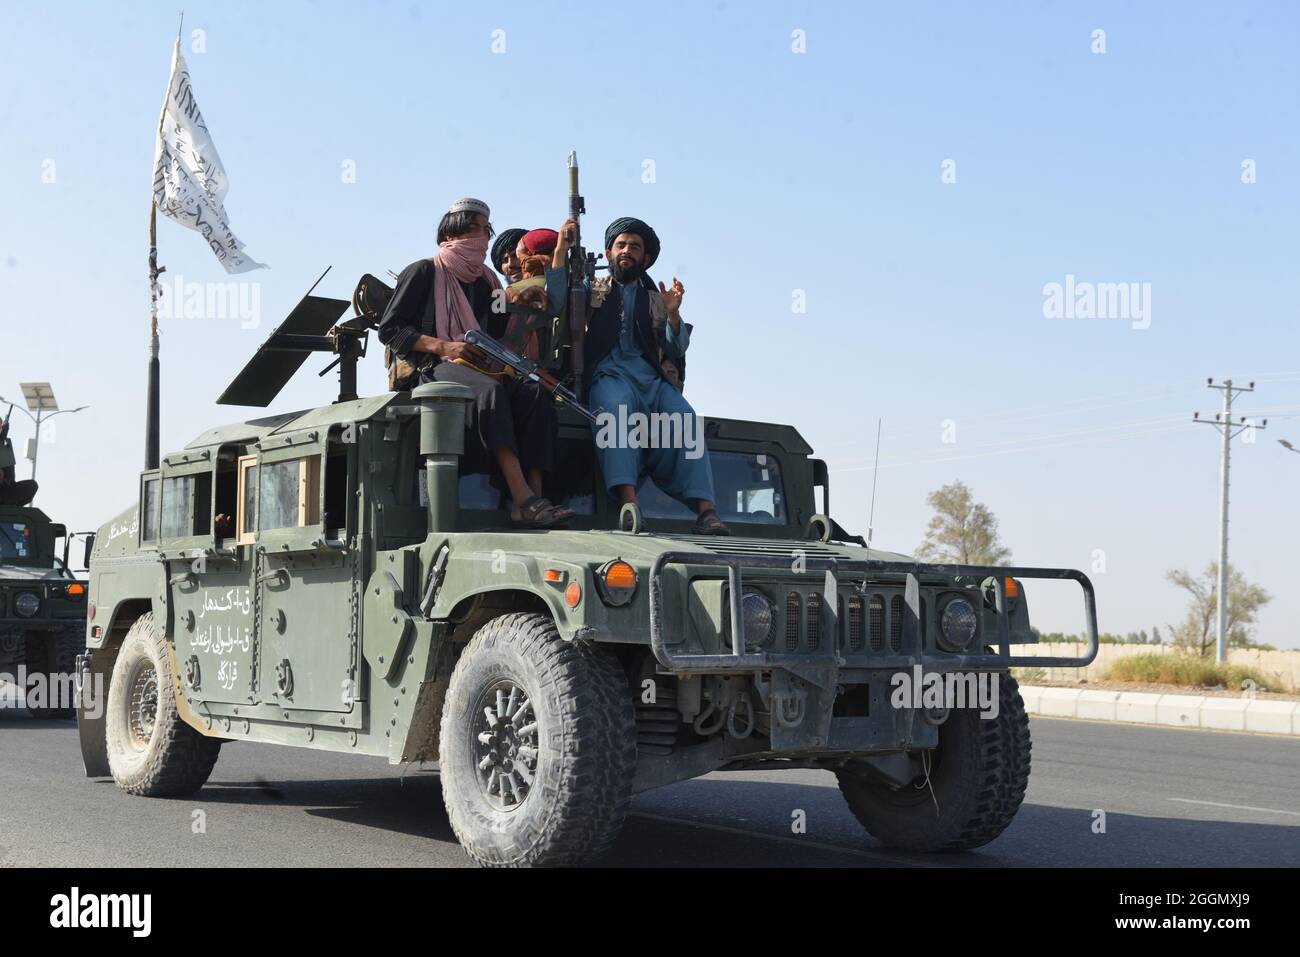 Kandahar città, Afghanistan meridionale. 2 settembre 2021. I talebani continuarono le loro celebrazioni per la vittoria con una parata militare nella città di Kandahar. Kandahar è la città spirituale dei talebani, e la capitale del gruppo durante il suo dominio del 1996-2001. I combattenti hanno fatto sventolare bandiere bianche dei talebani da Humvees e blindato SUV durante la sfilata. Foto Stock